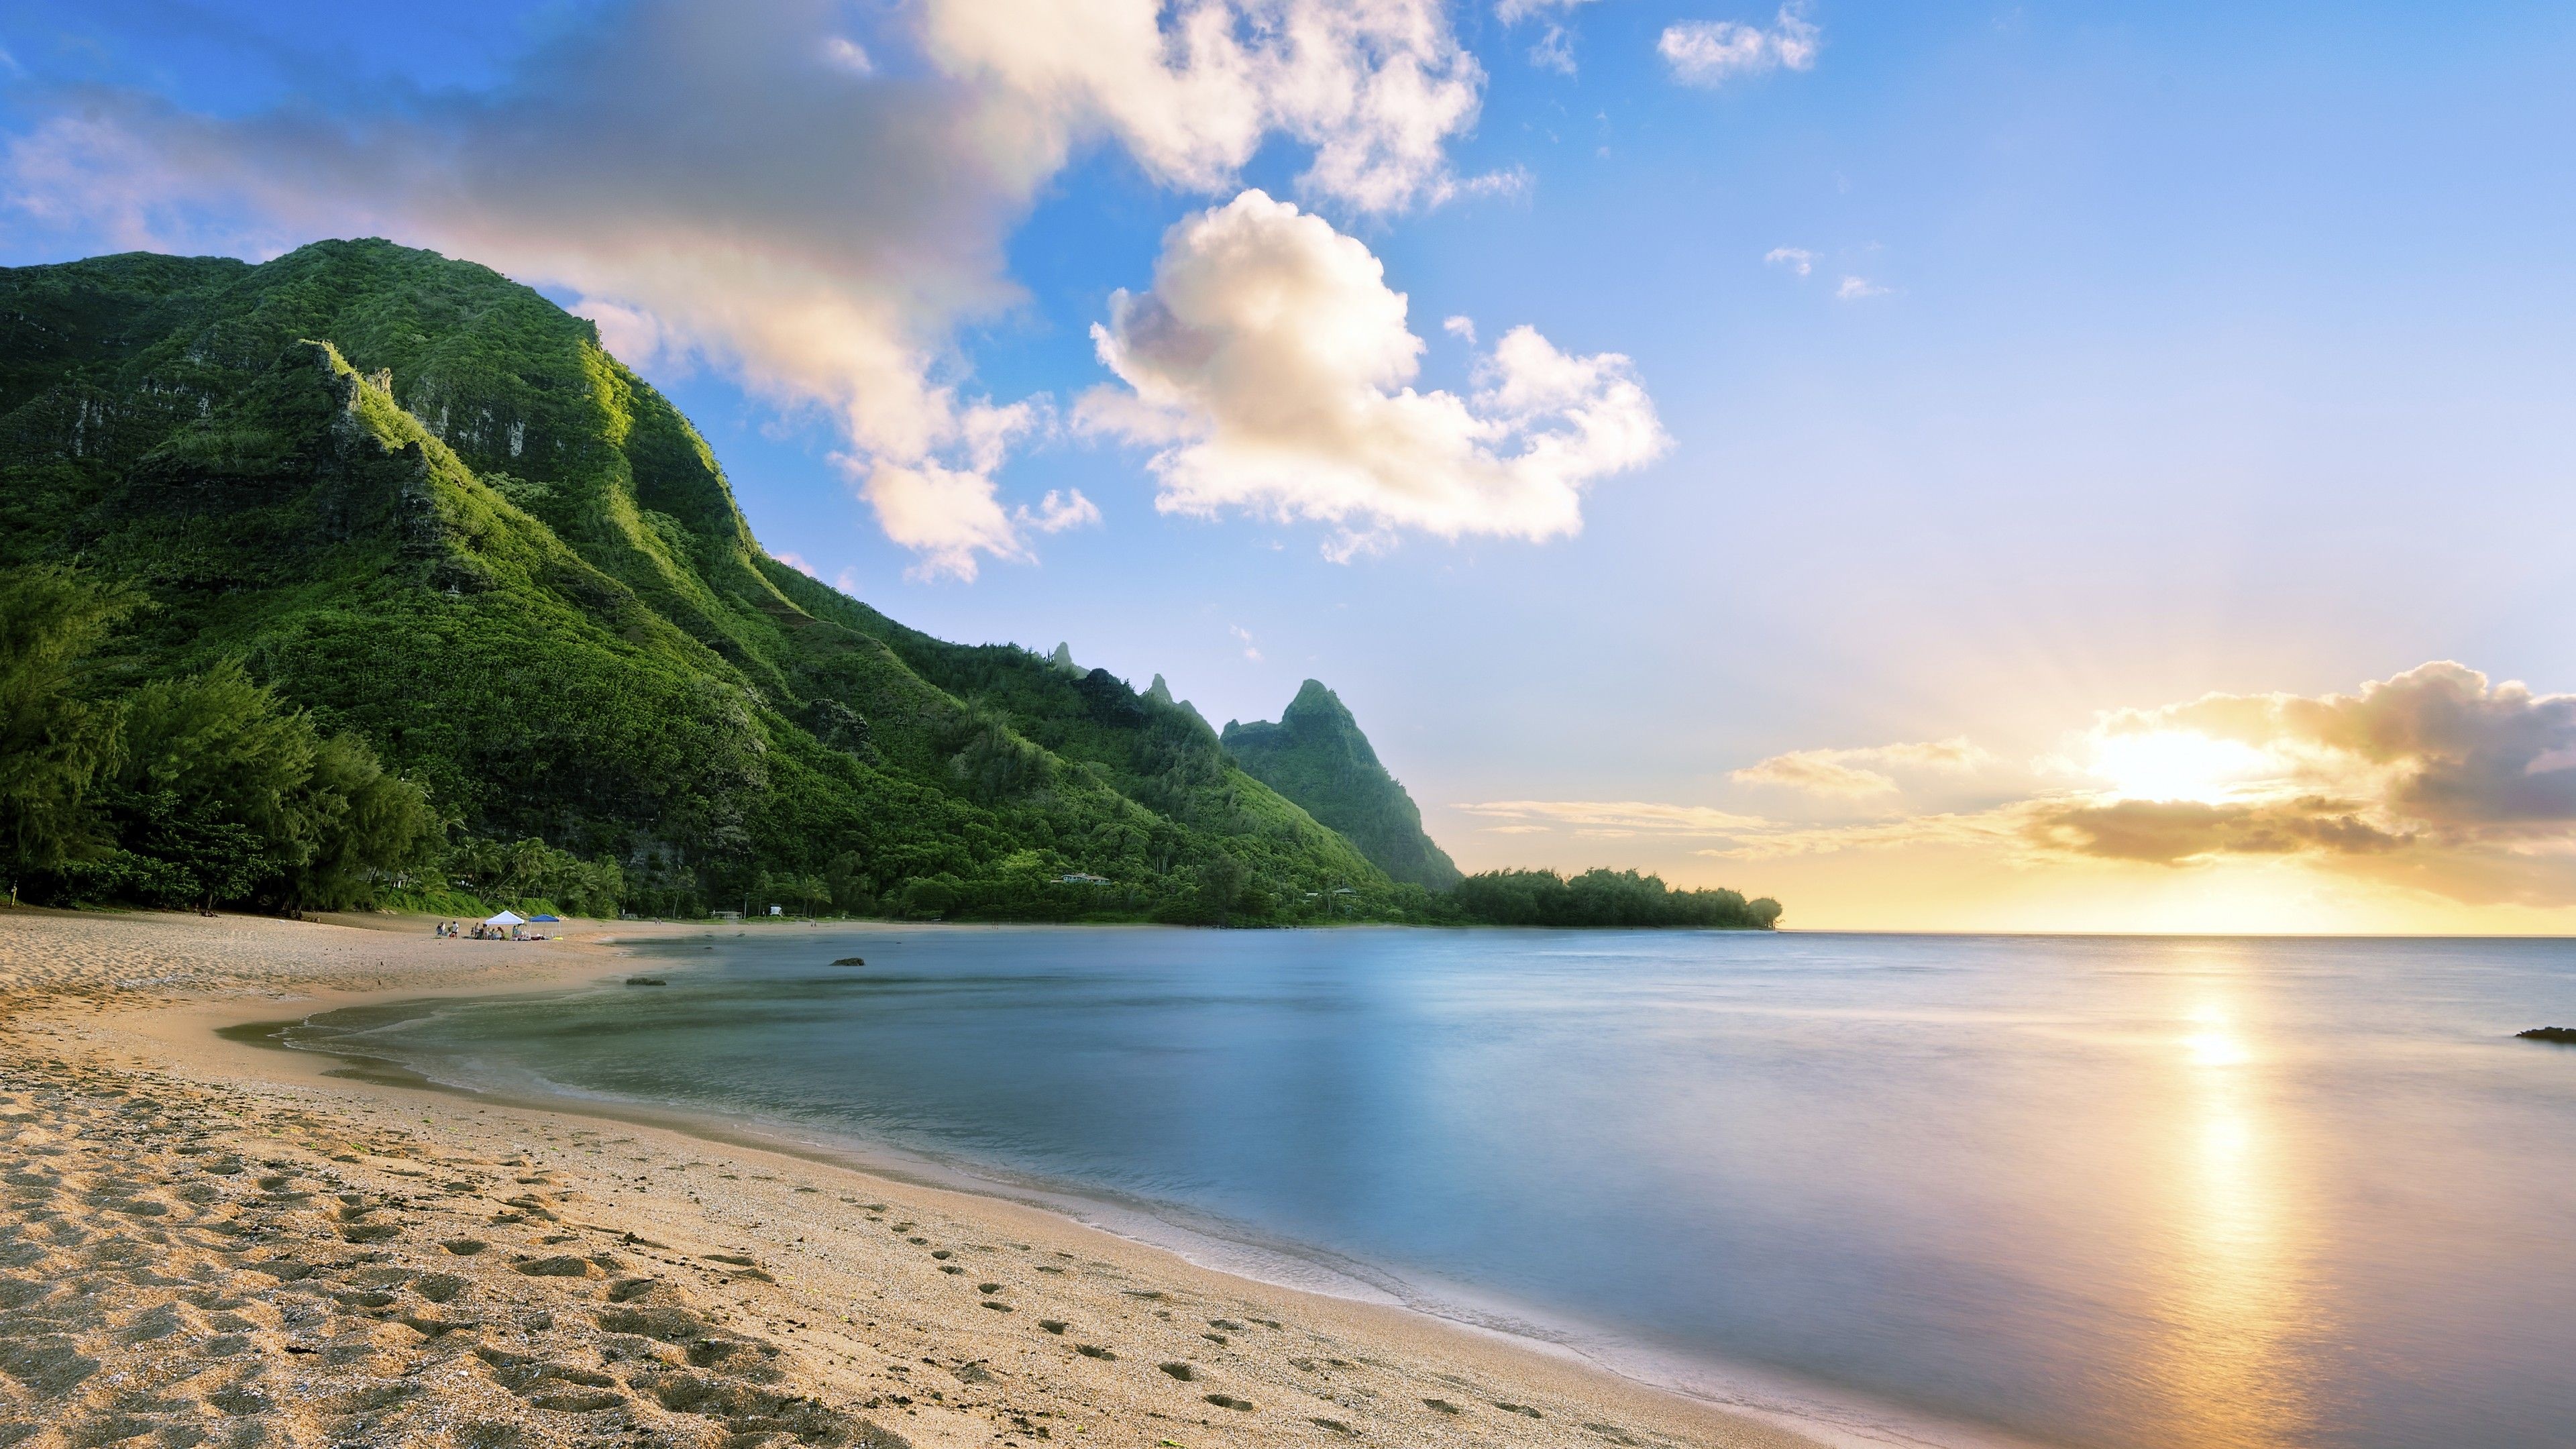 Maui's allure, Paradise found, Sun-soaked wonder, Tropical escapes, 3840x2160 4K Desktop